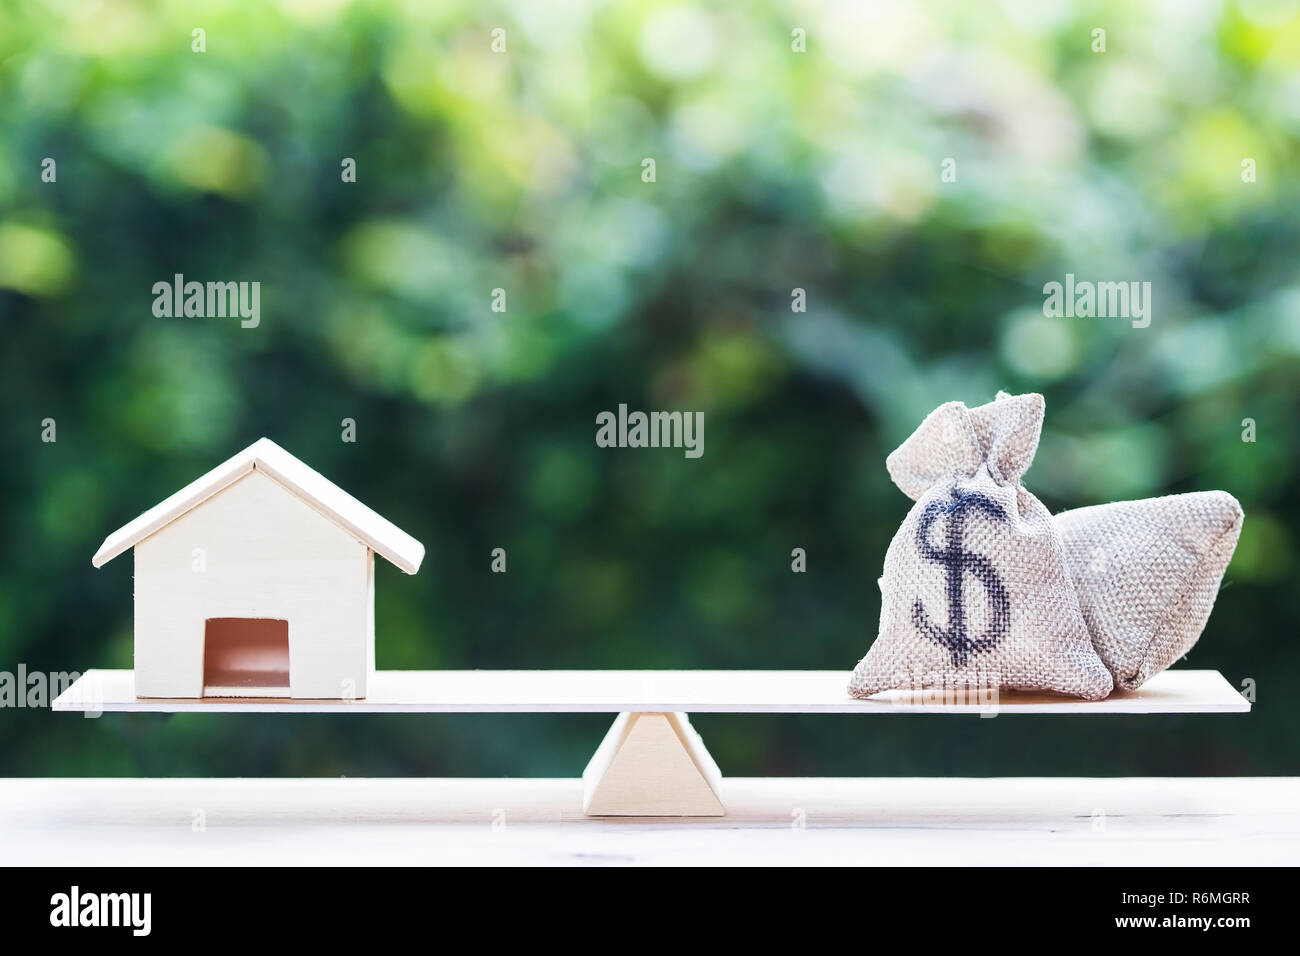 Maison de prêt, les prêts hypothécaires, de la dette, l'épargne de l'argent pour l'achat d'une maison concept : un équilibre entre un sac d'argent et petite résidence, maison modèle sur le tableau contre green natu Banque D'Images